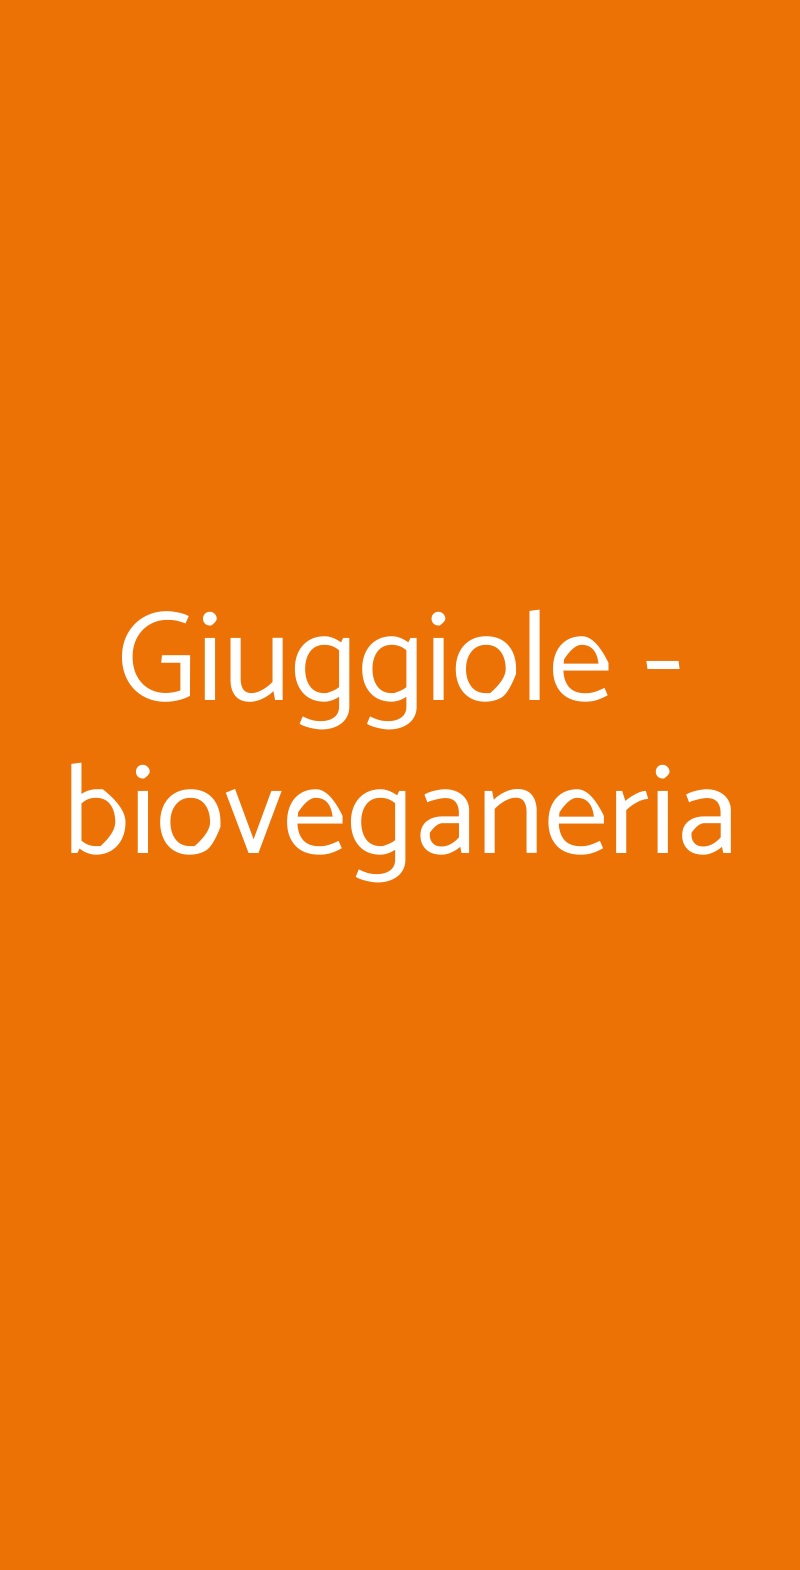 Giuggiole - bioveganeria Torino menù 1 pagina